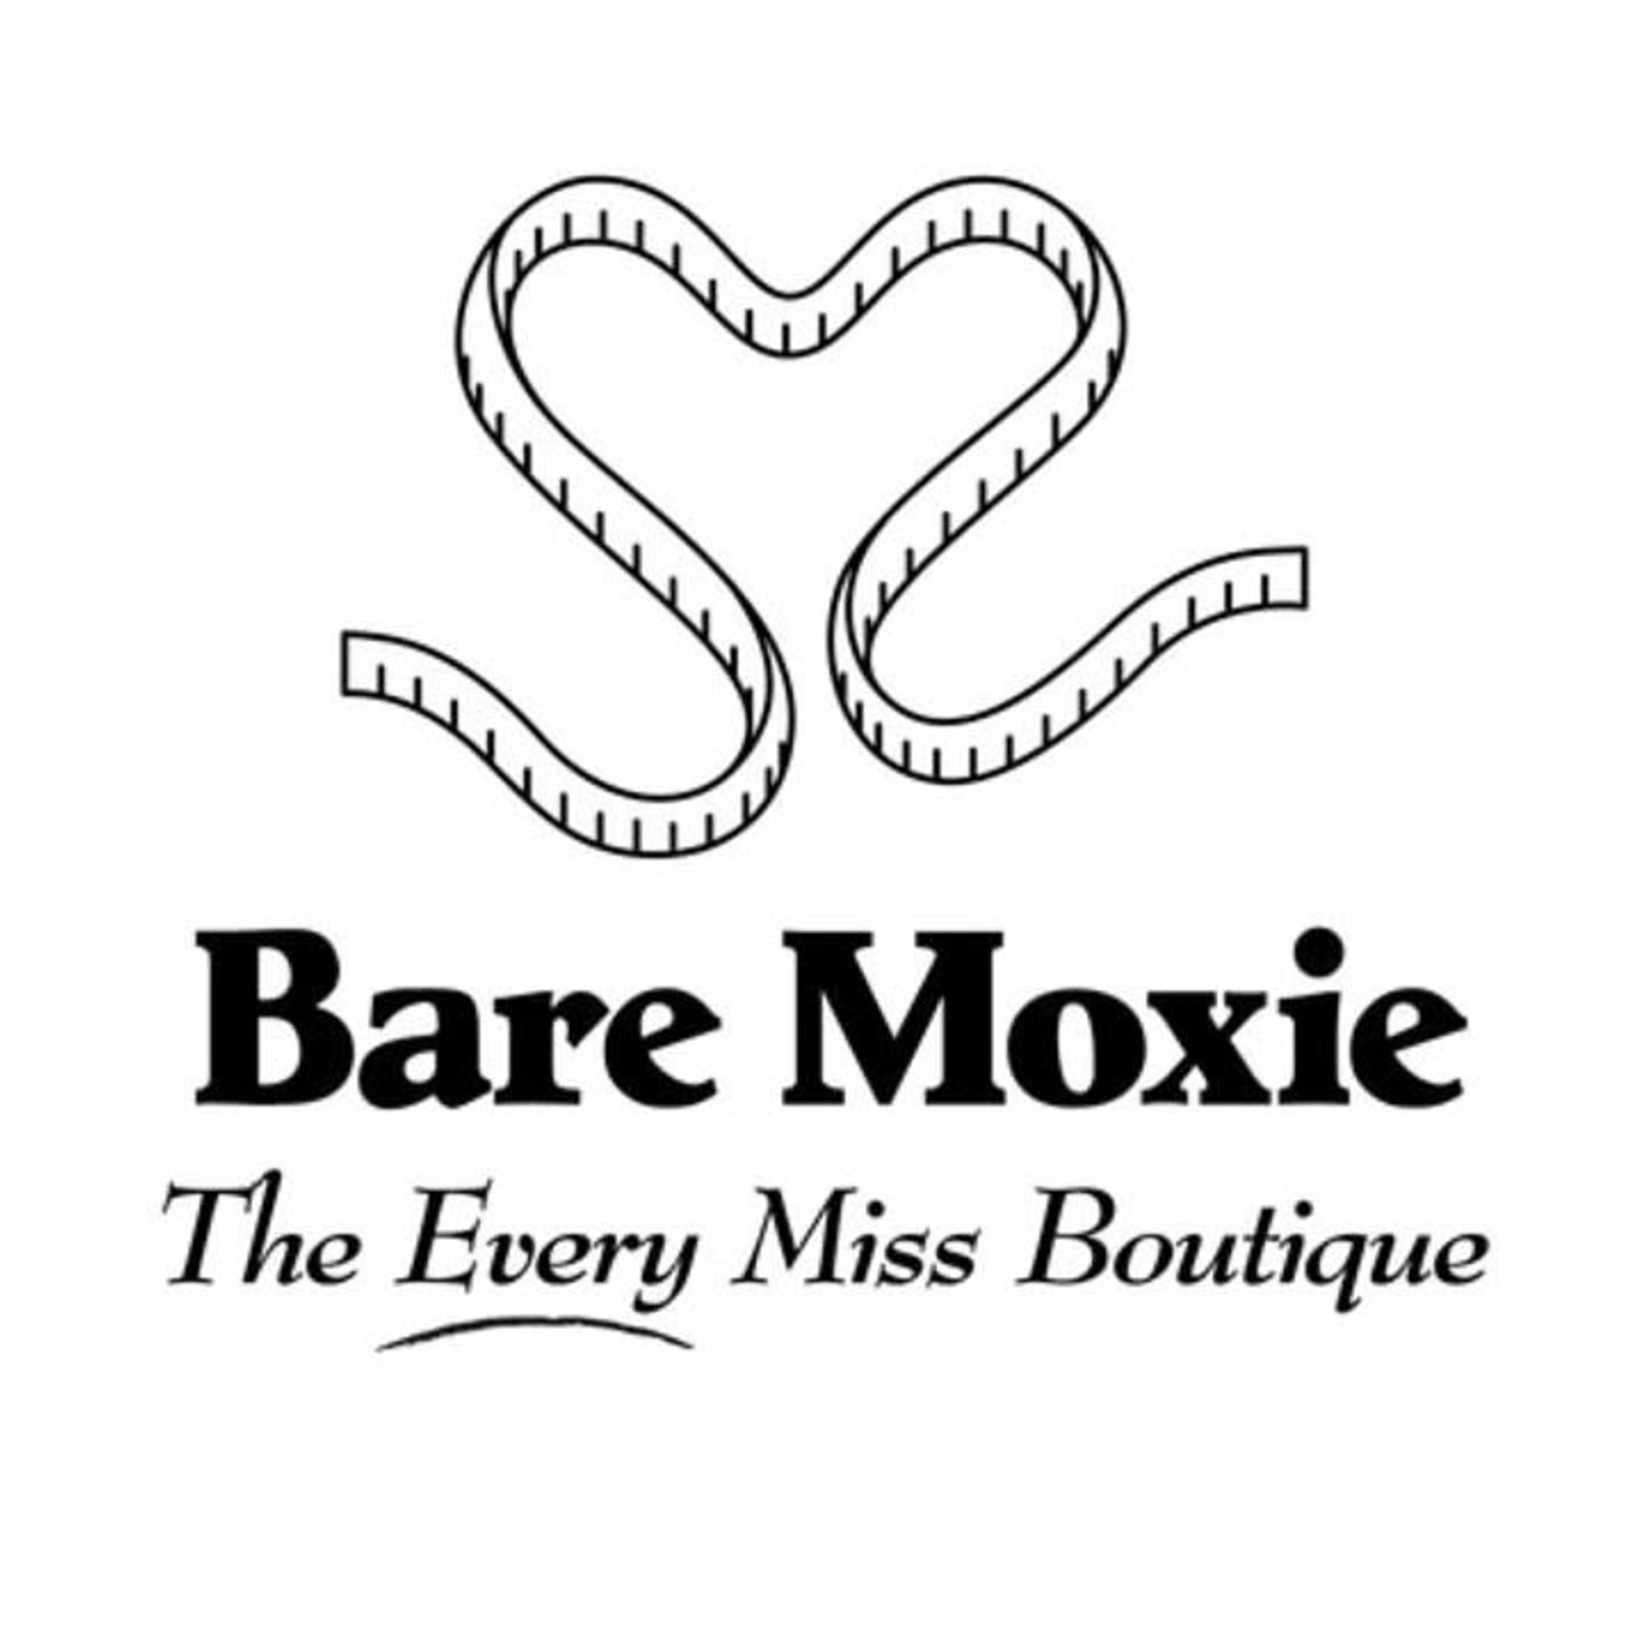 Bare Moxie Boutique-Geneva $25.00 General certificate-1/30 - WRMN 1410